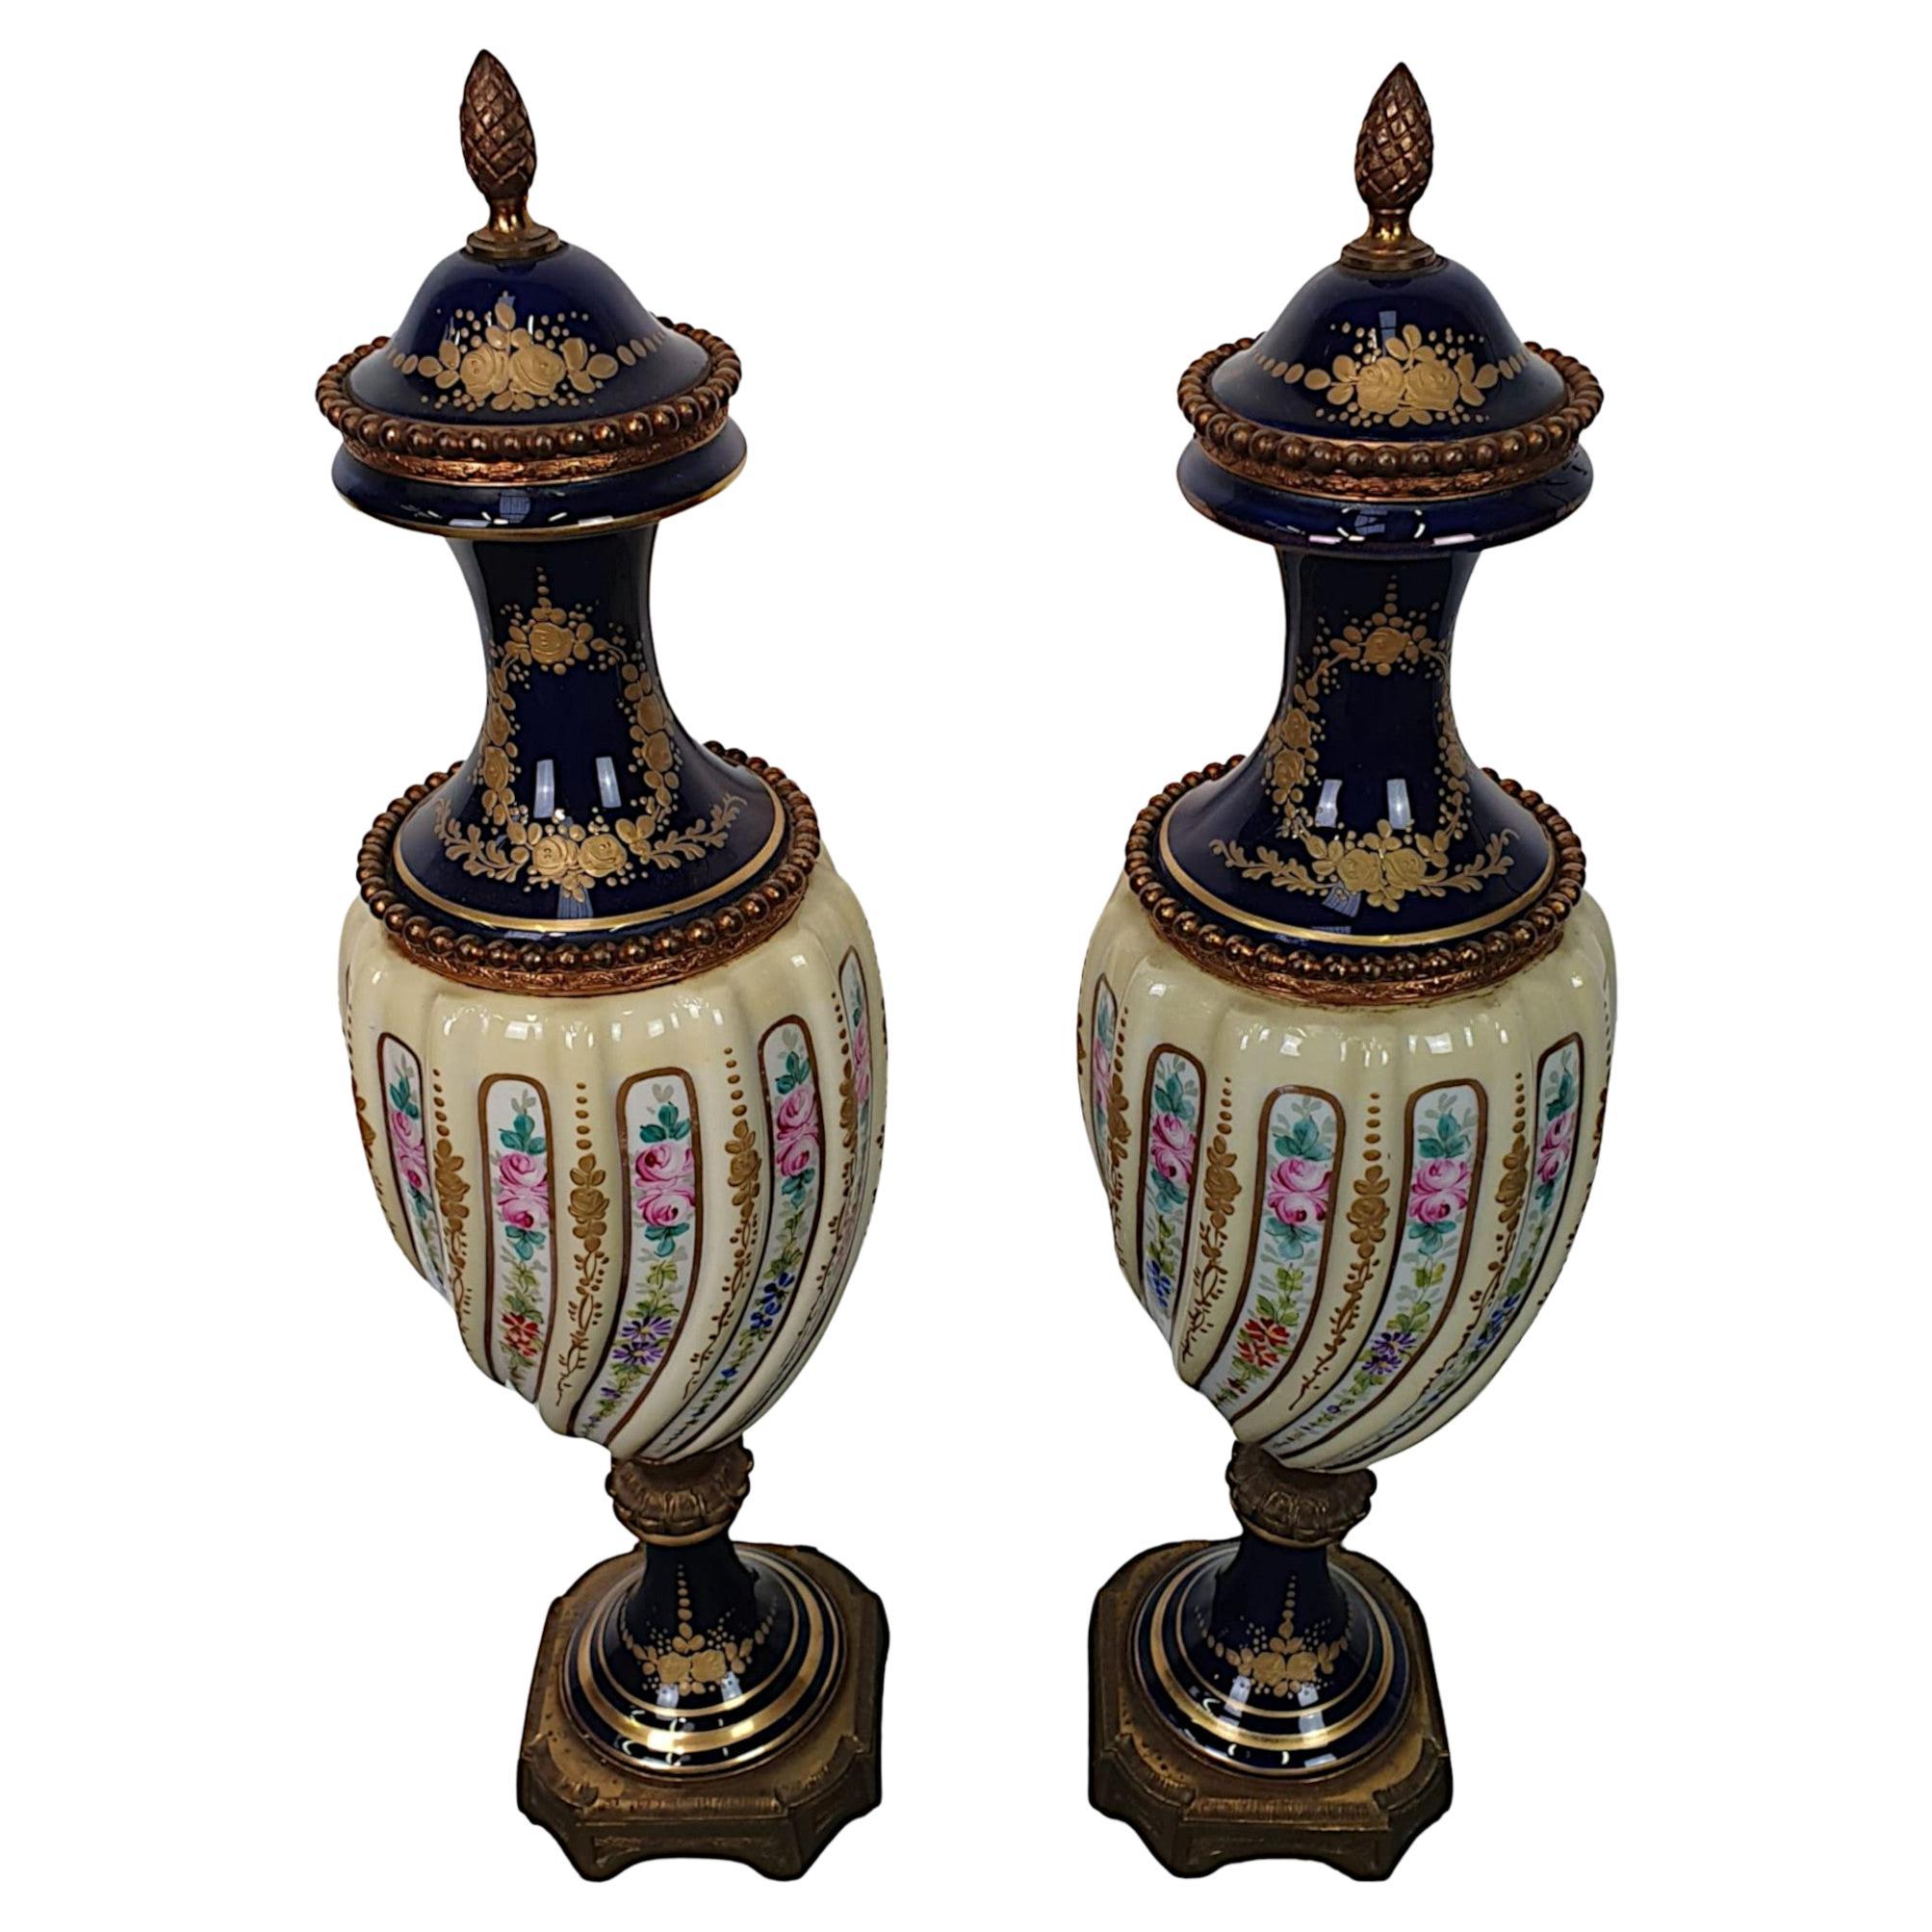 Schönes, hochwertiges Urnenpaar aus dem 19. Jahrhundert in der Art von Sèvres